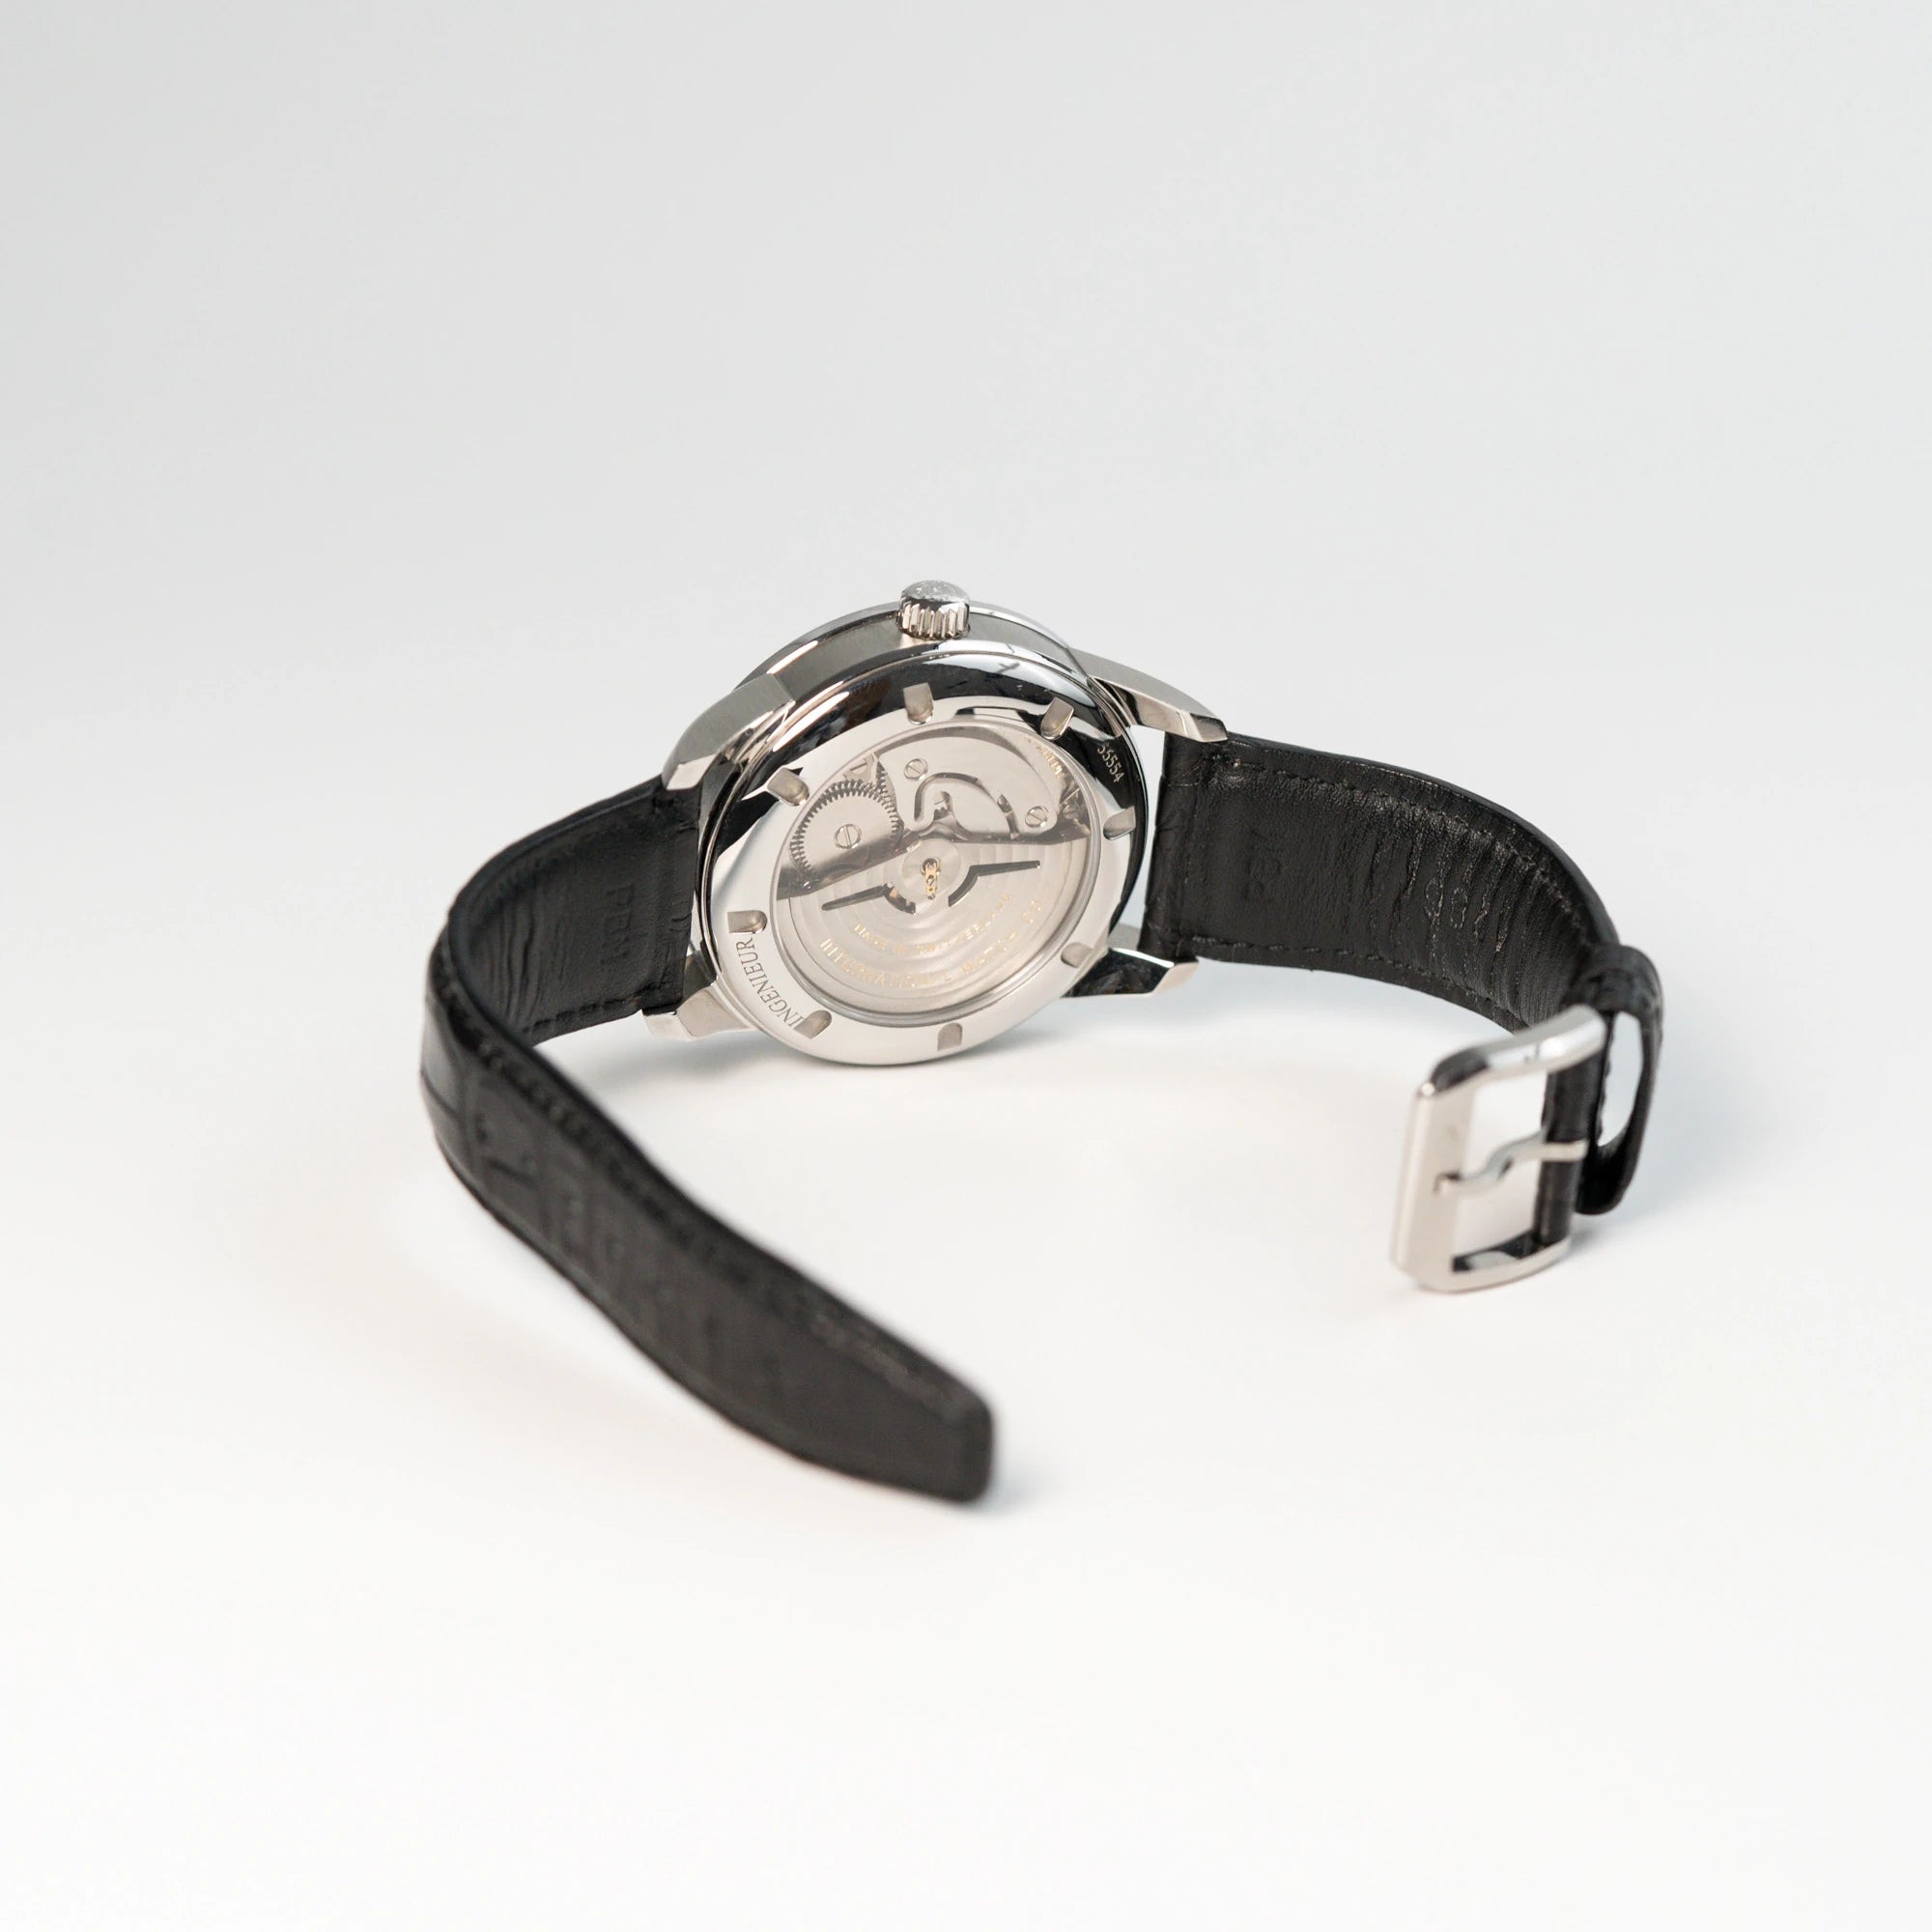 IWC Schaffhausen Uhr "Ingenieur" mit der Referenz IW323301 am schwarzen Lederband mit geöffneter Dornschliesse